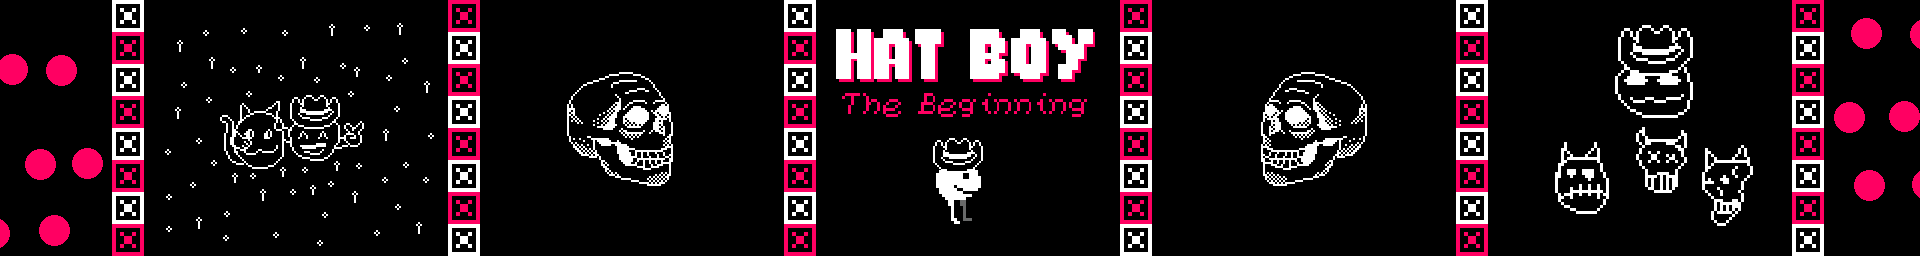 Hat Boy GB